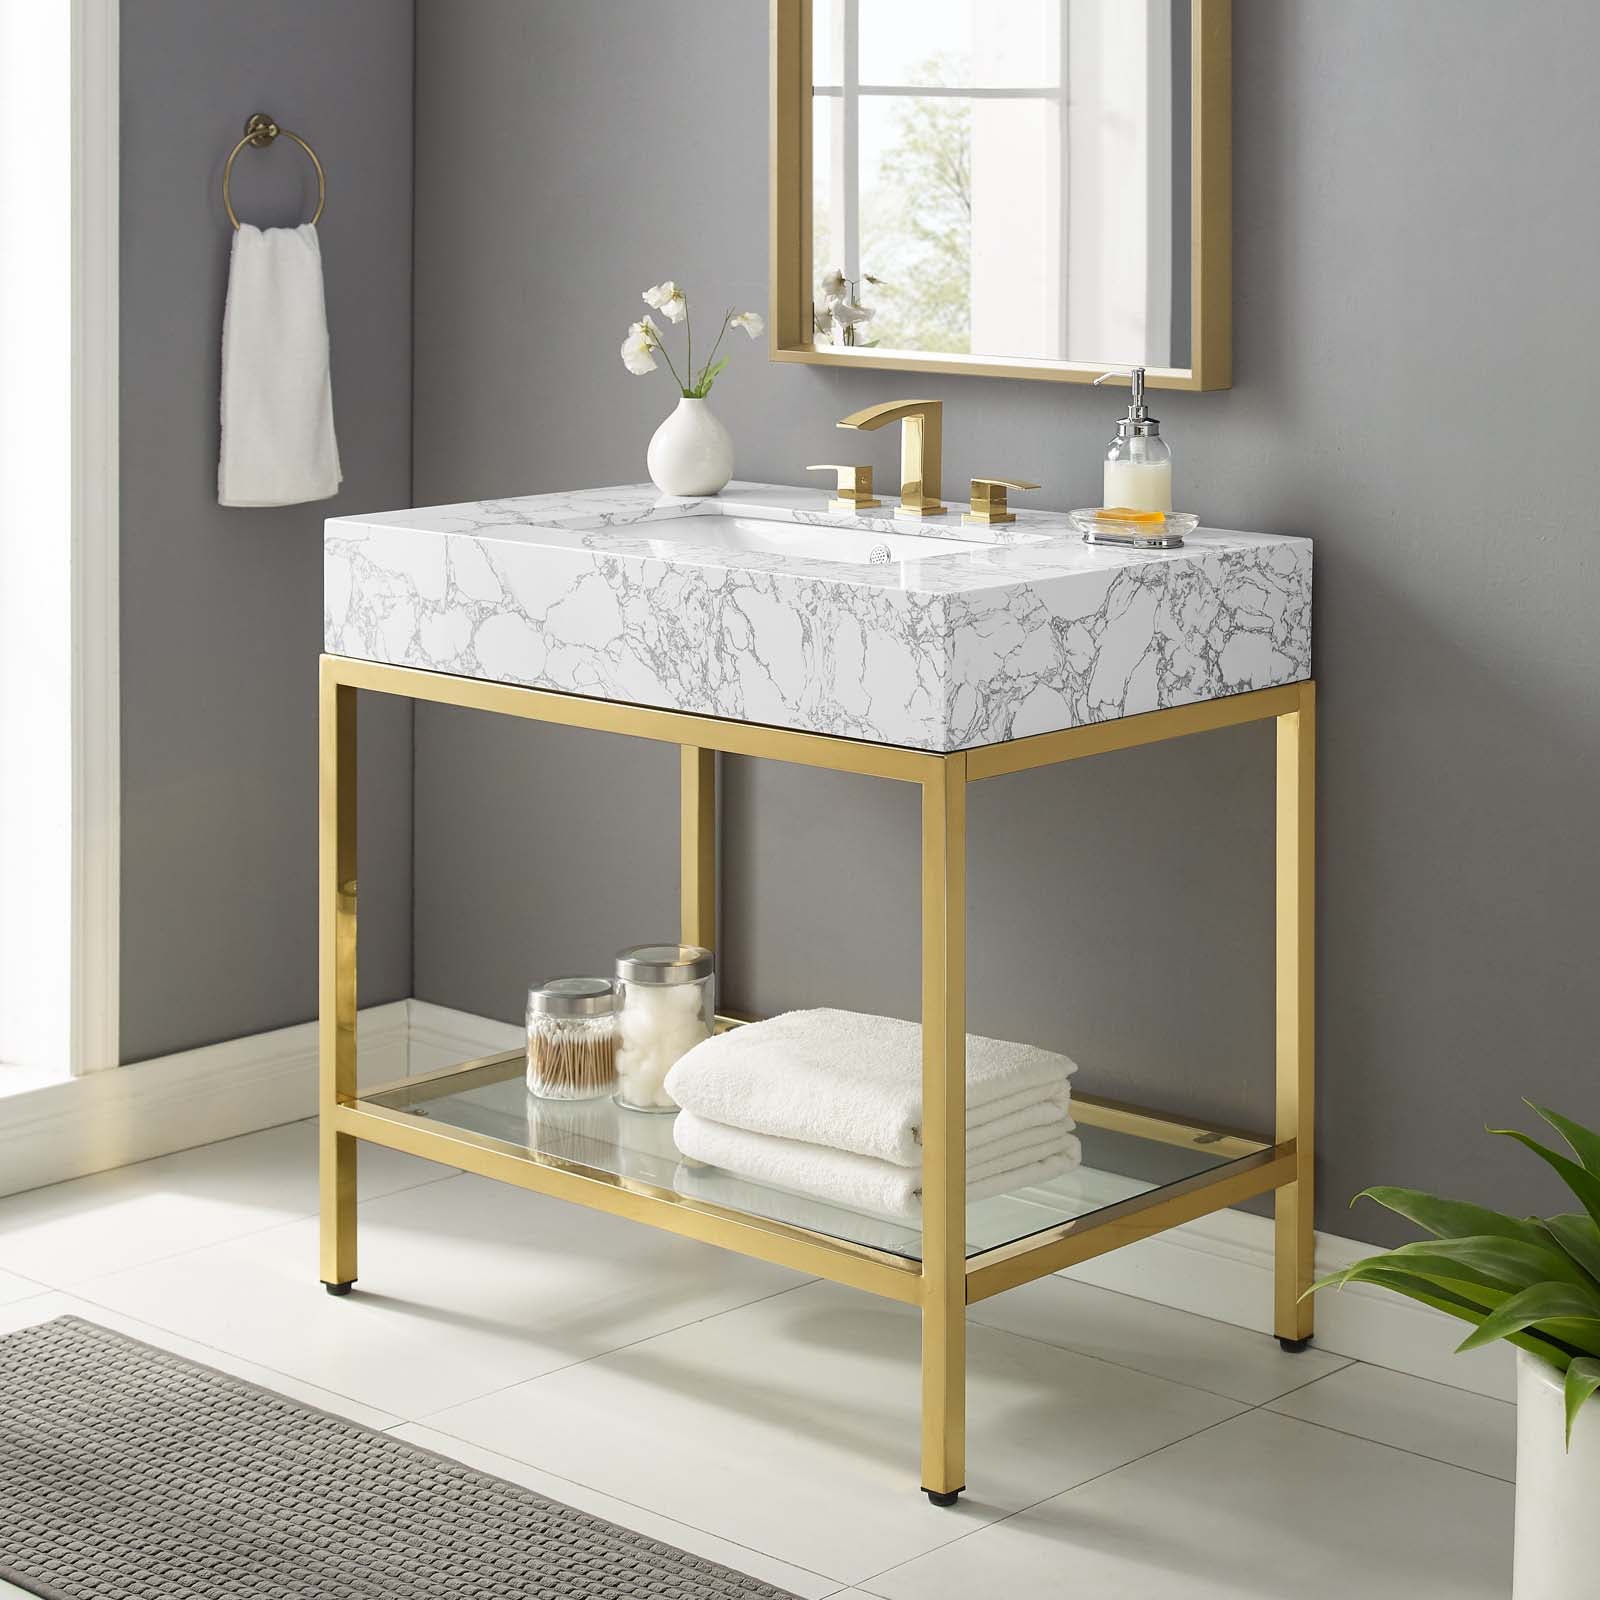 Kingsley 36" Gold Stainless Steel Bathroom Vanity-Bathroom Vanity-Modway-Wall2Wall Furnishings